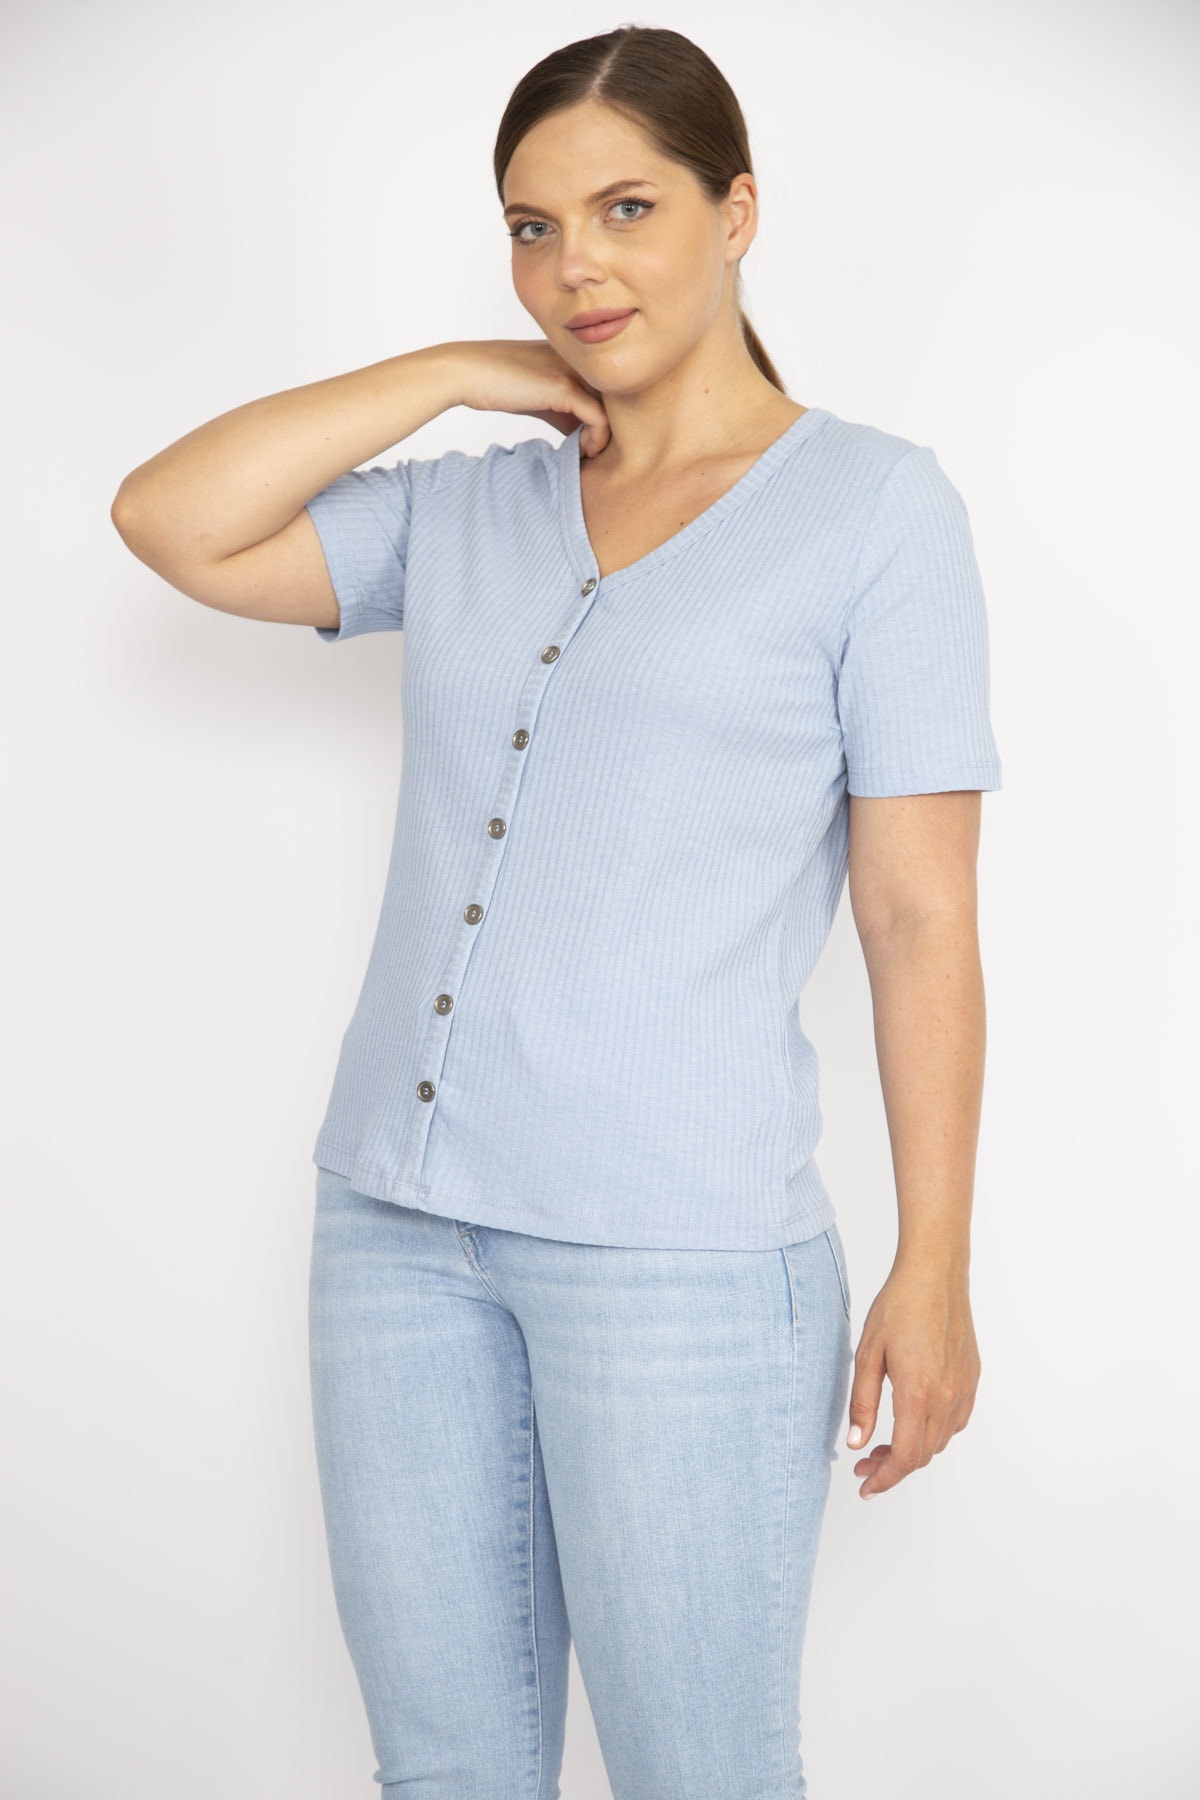 Şans Women's Blue Plus Size V-Neck Front Decorative Buttoned Camisole Fabric Short Sleeve Blouse